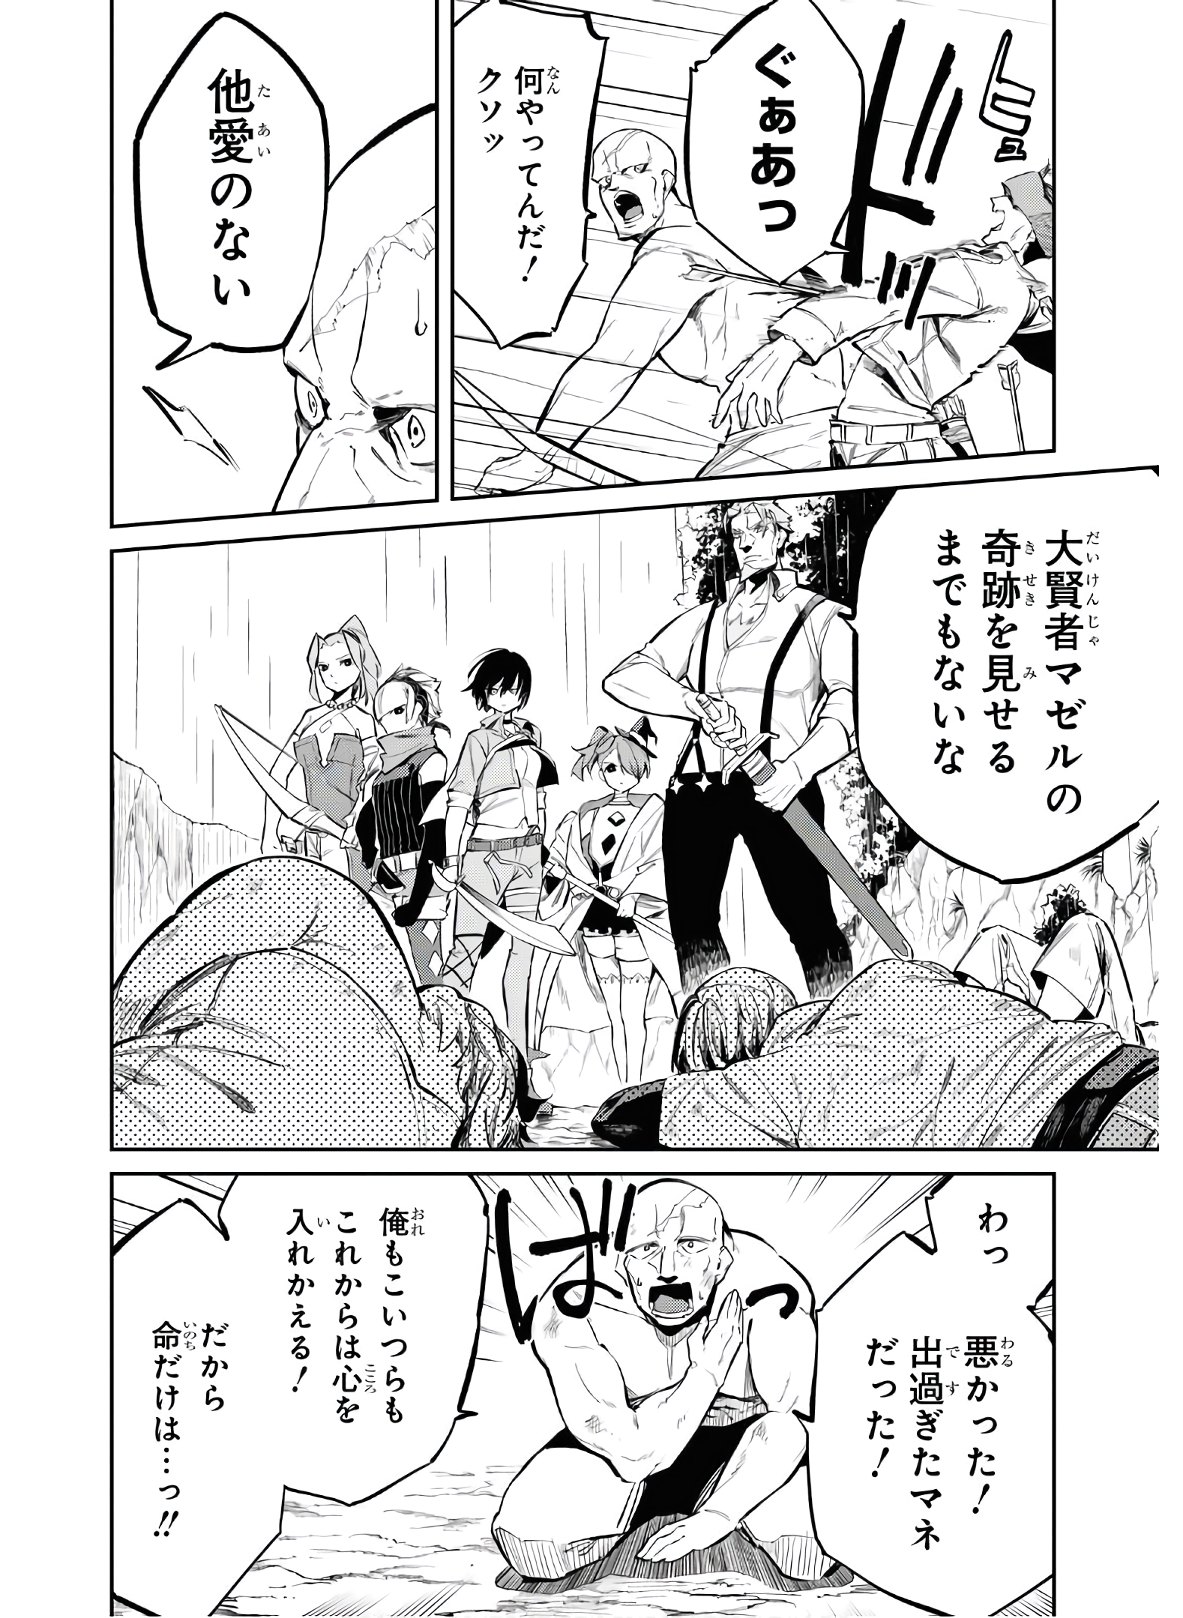 Maryoku 0 de Saikyou no Daikenja ~Sore wa Mahou dewa Nai, Butsuri da!~ - Chapter 4 - Page 12